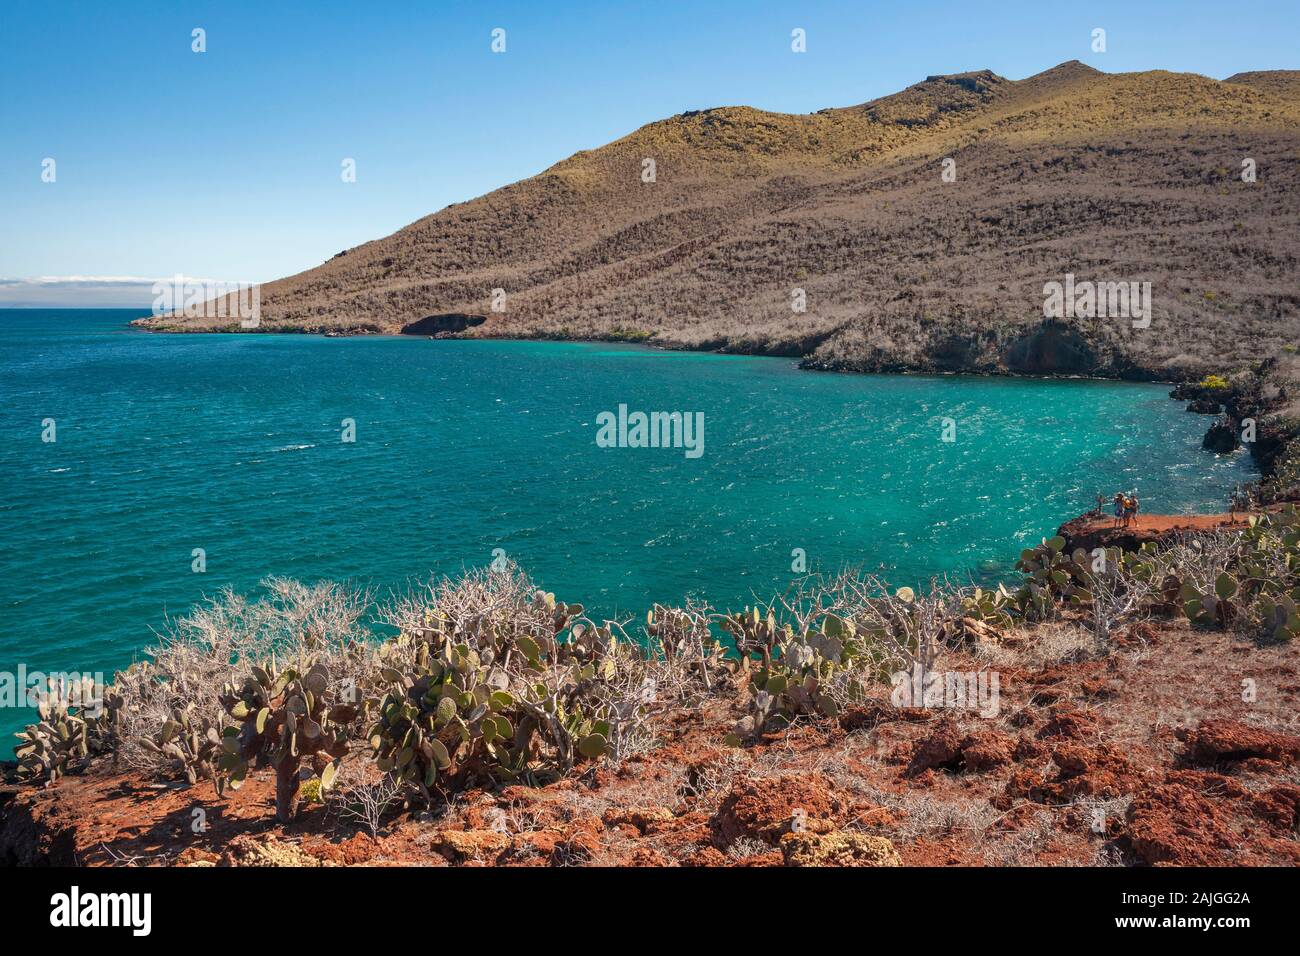 Landscape of Rabida island, Galapagos, Ecuador. Stock Photo